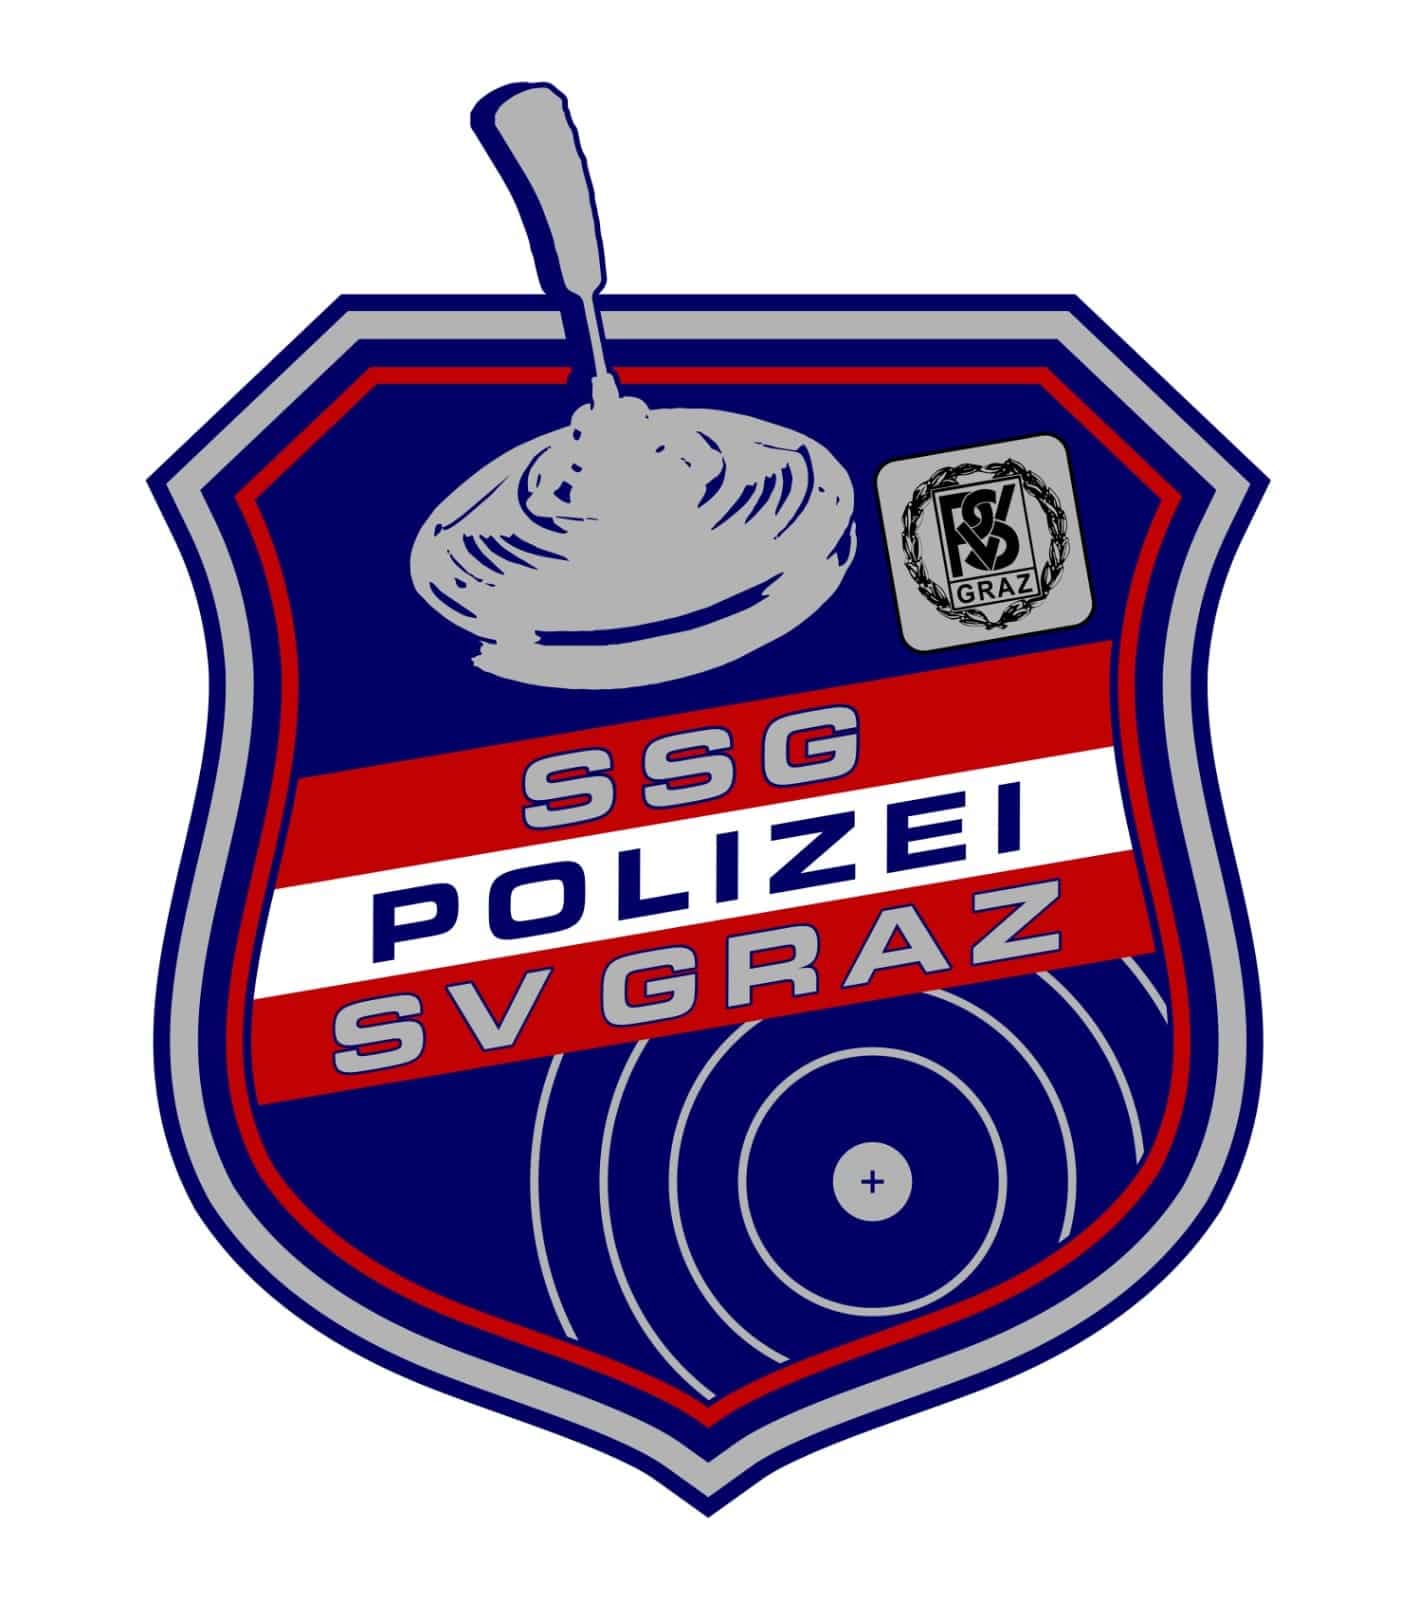 Logo SSG Polizei SV GRAZ I